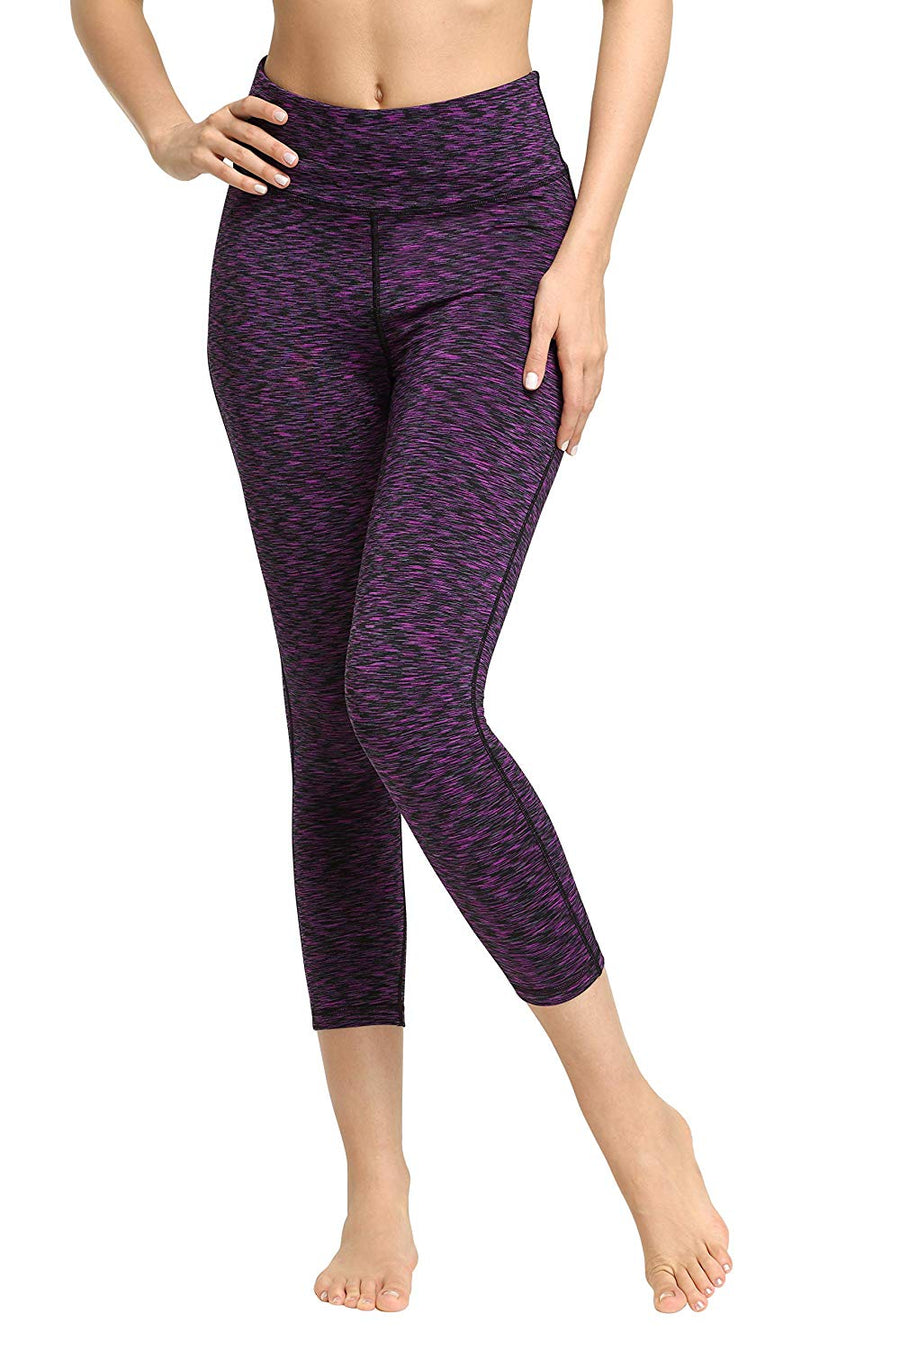 Women's Mosaic Digital Printing Quick-Drying Fitness Leggings Slimming Yoga  Pants 